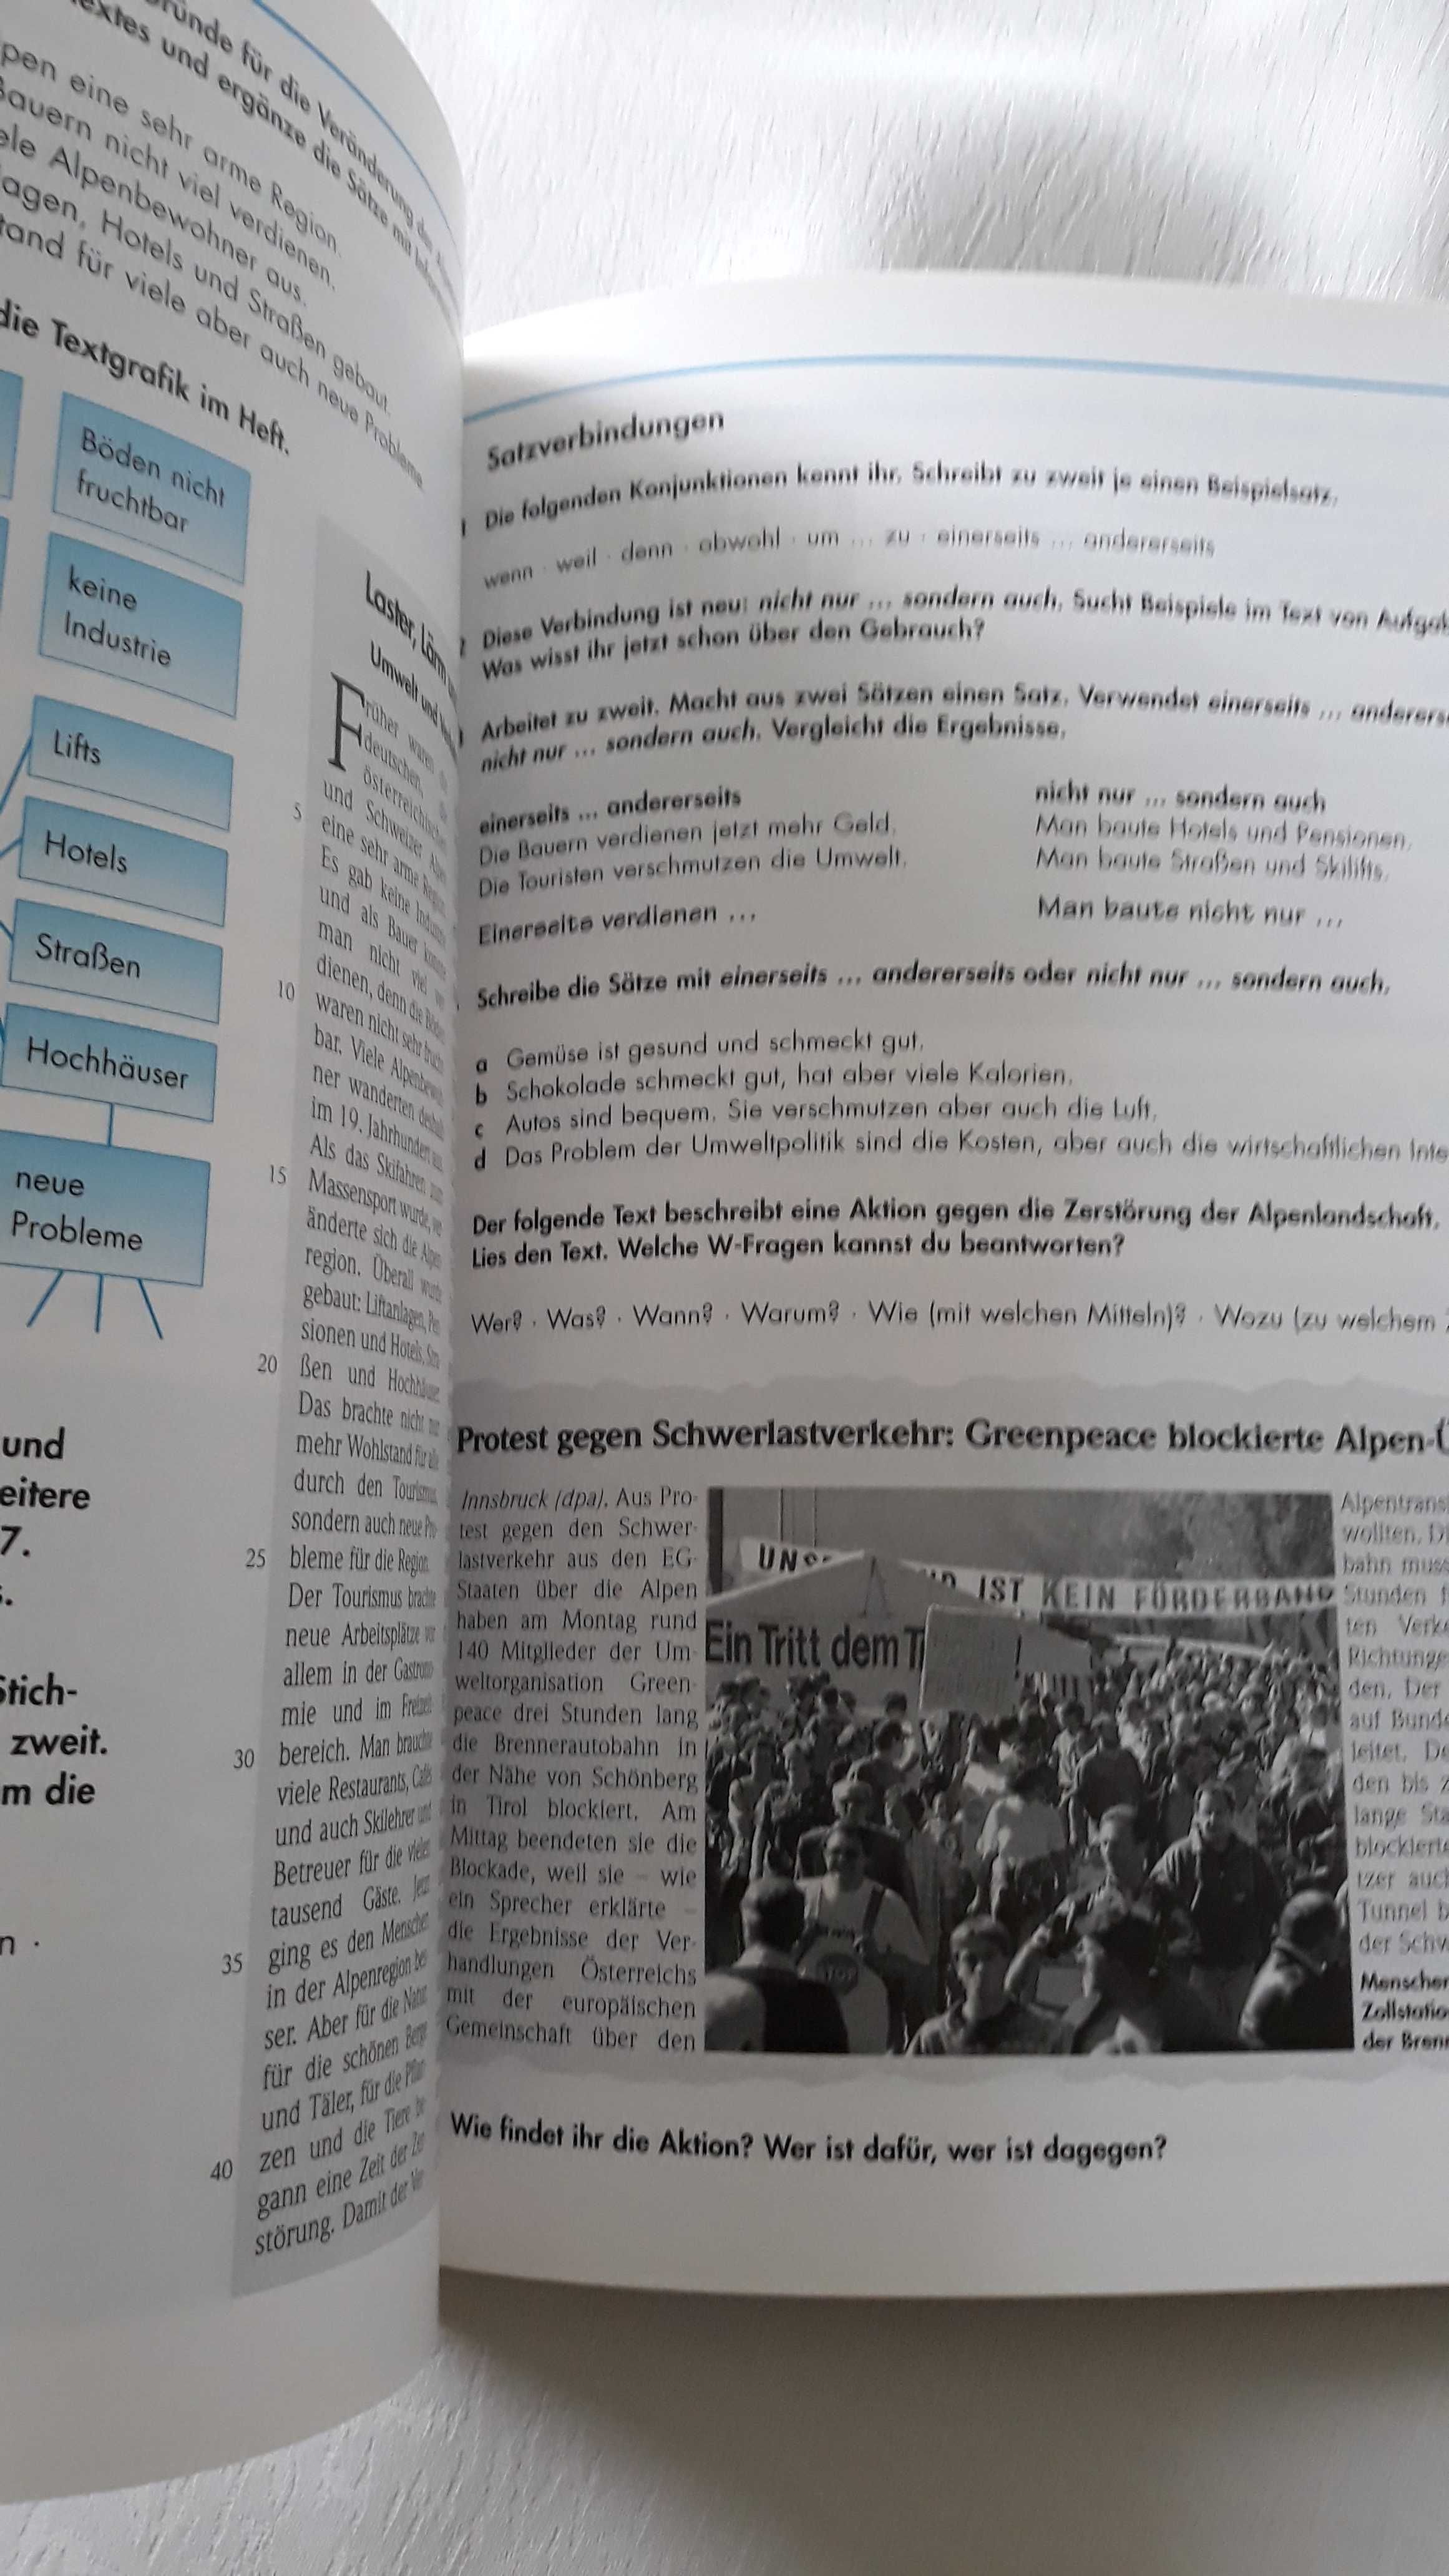 Sowieso podręcznik do języka niemieckiego Langenscheid